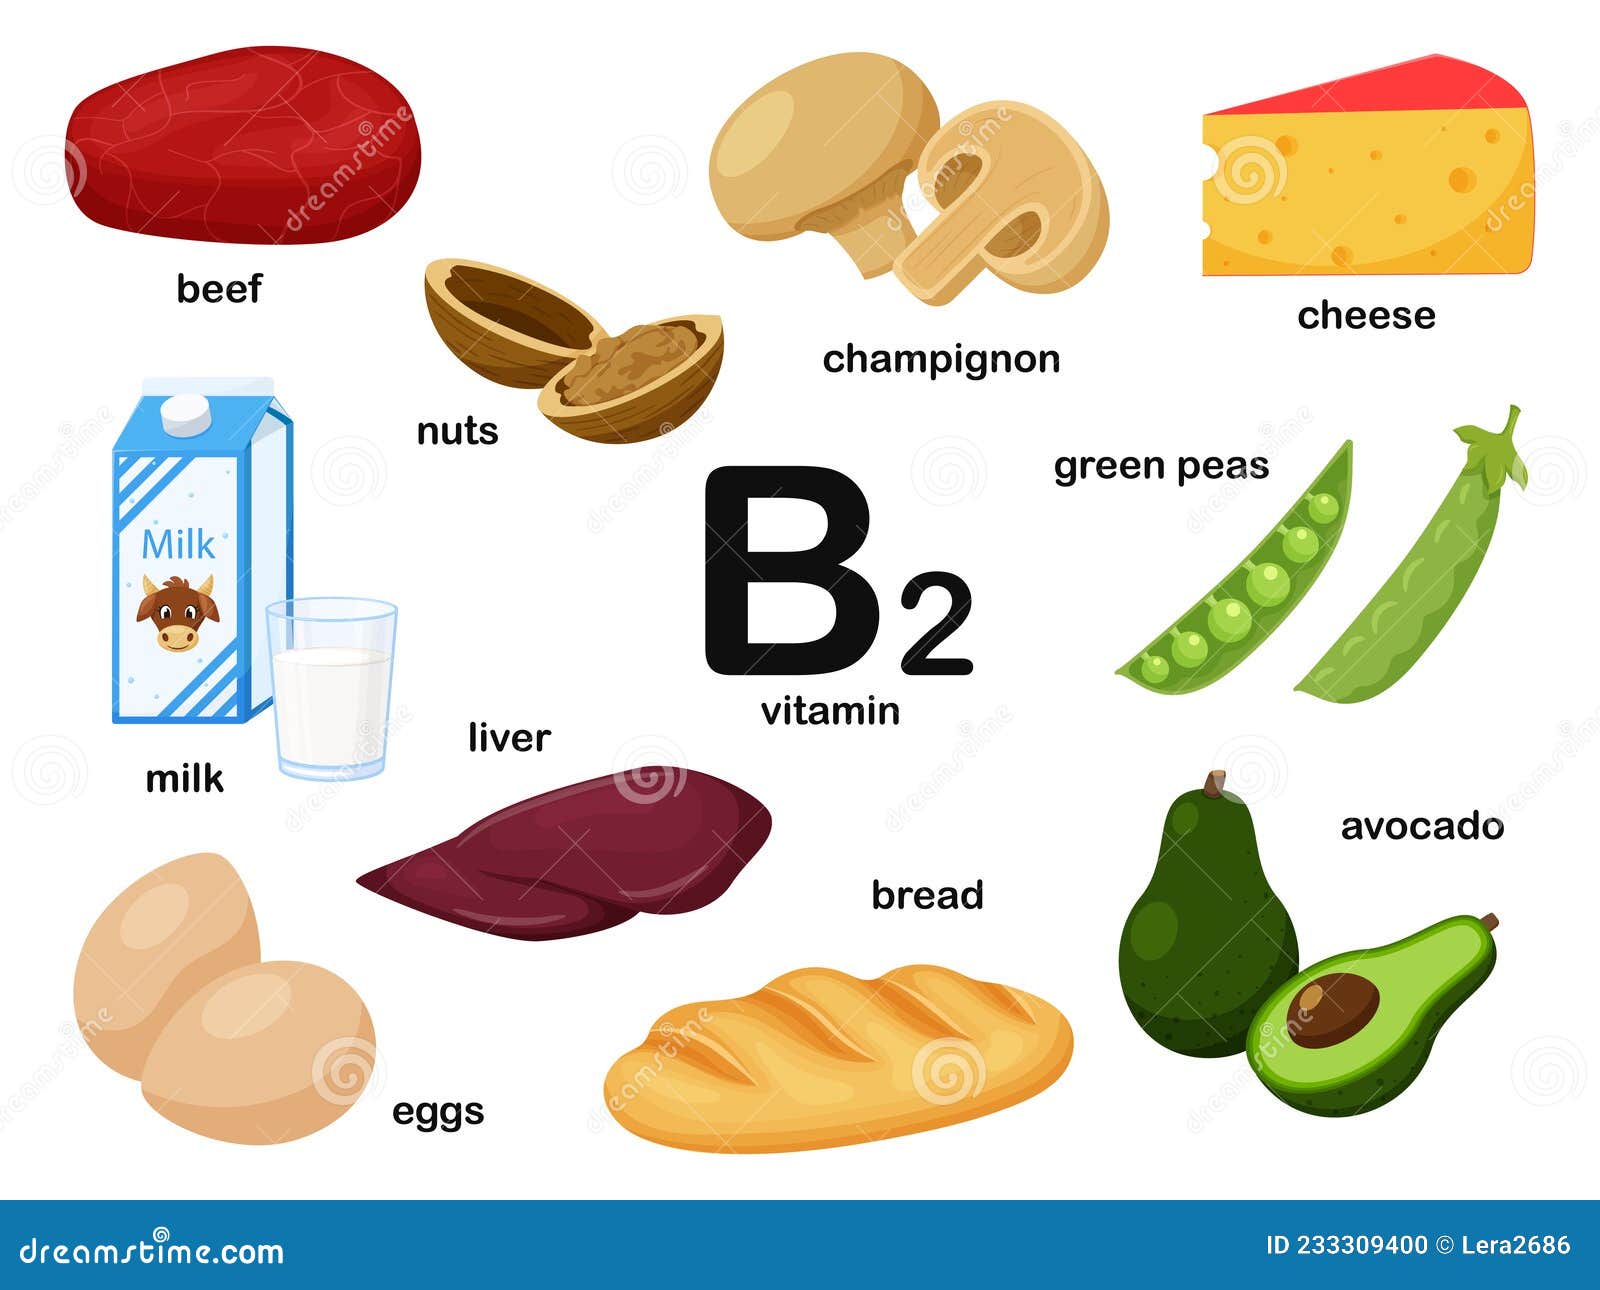 vitamin b complex rich foods